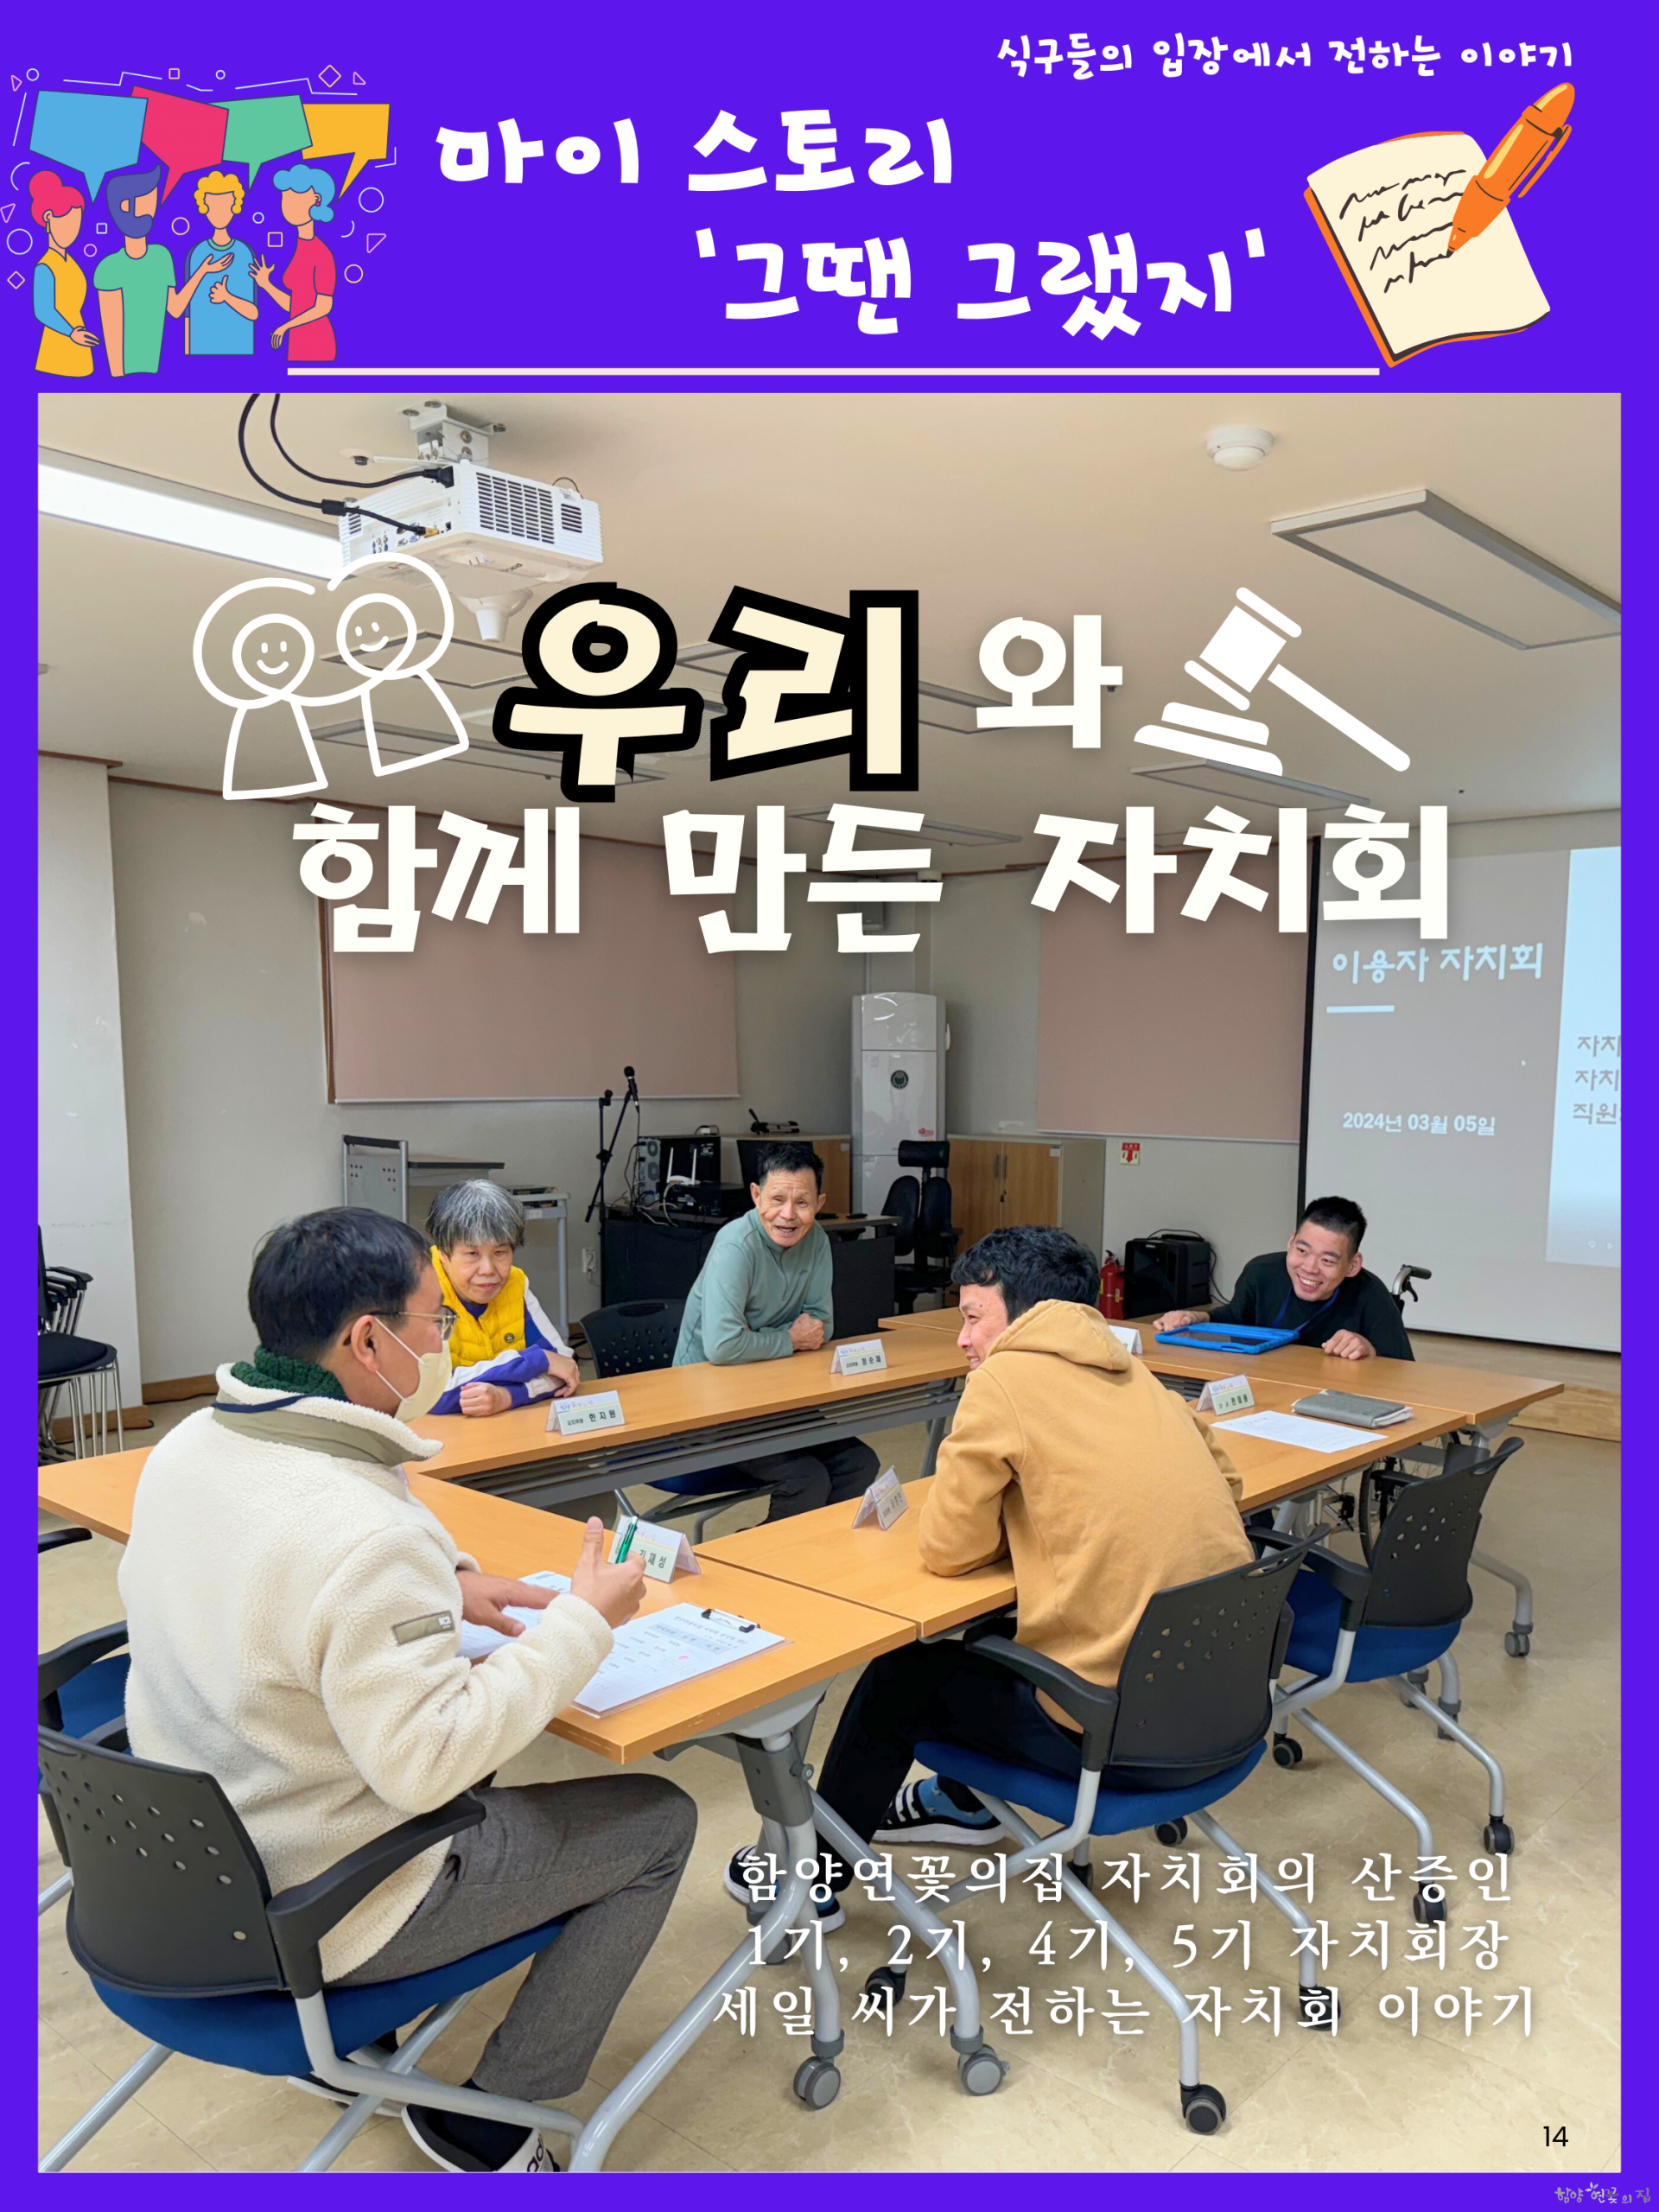 14 - 3월 제5기 자치회장 박세일 마이스토리 01.png